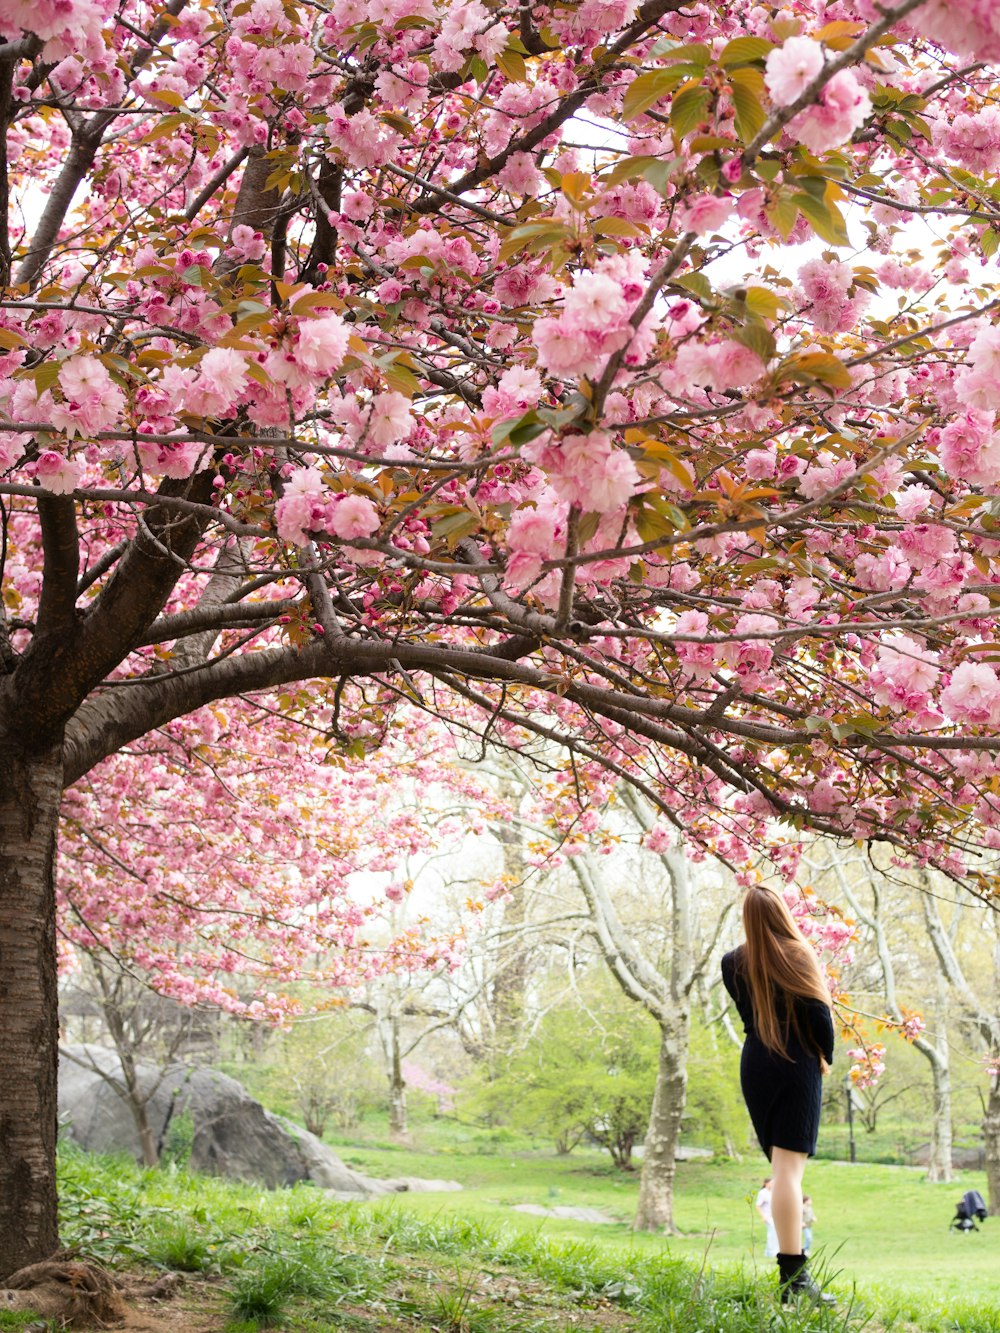 Una persona parada debajo de un árbol con flores rosadas